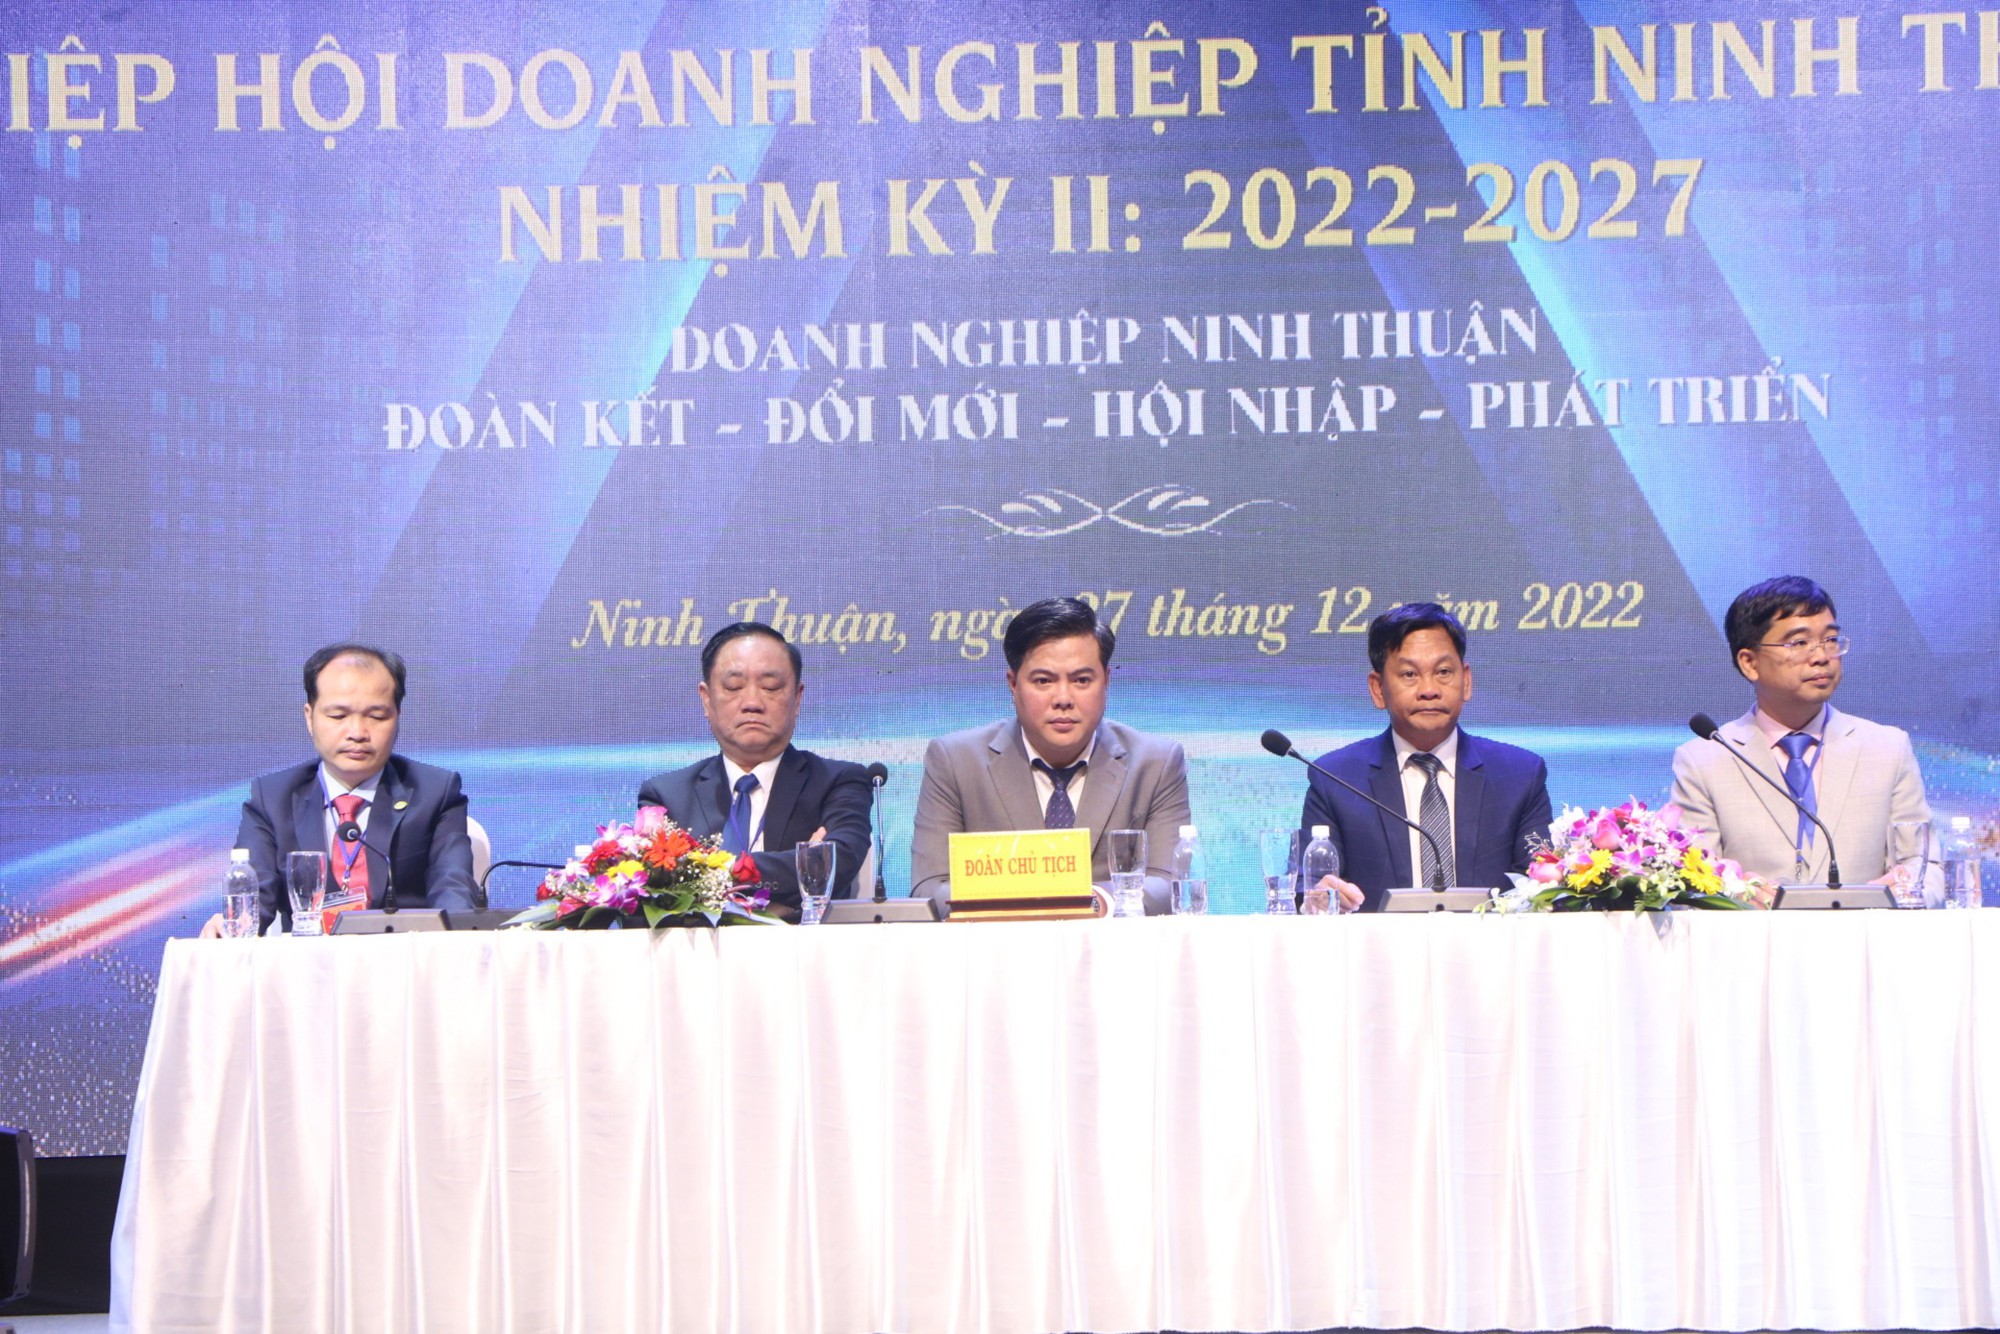 Giám đốc Công ty Cổ phần Thành Đông Ninh Thuận được đại hội bầu làm Chủ tịch Hiệp hội doanh nghiệp tỉnh - Ảnh 1.